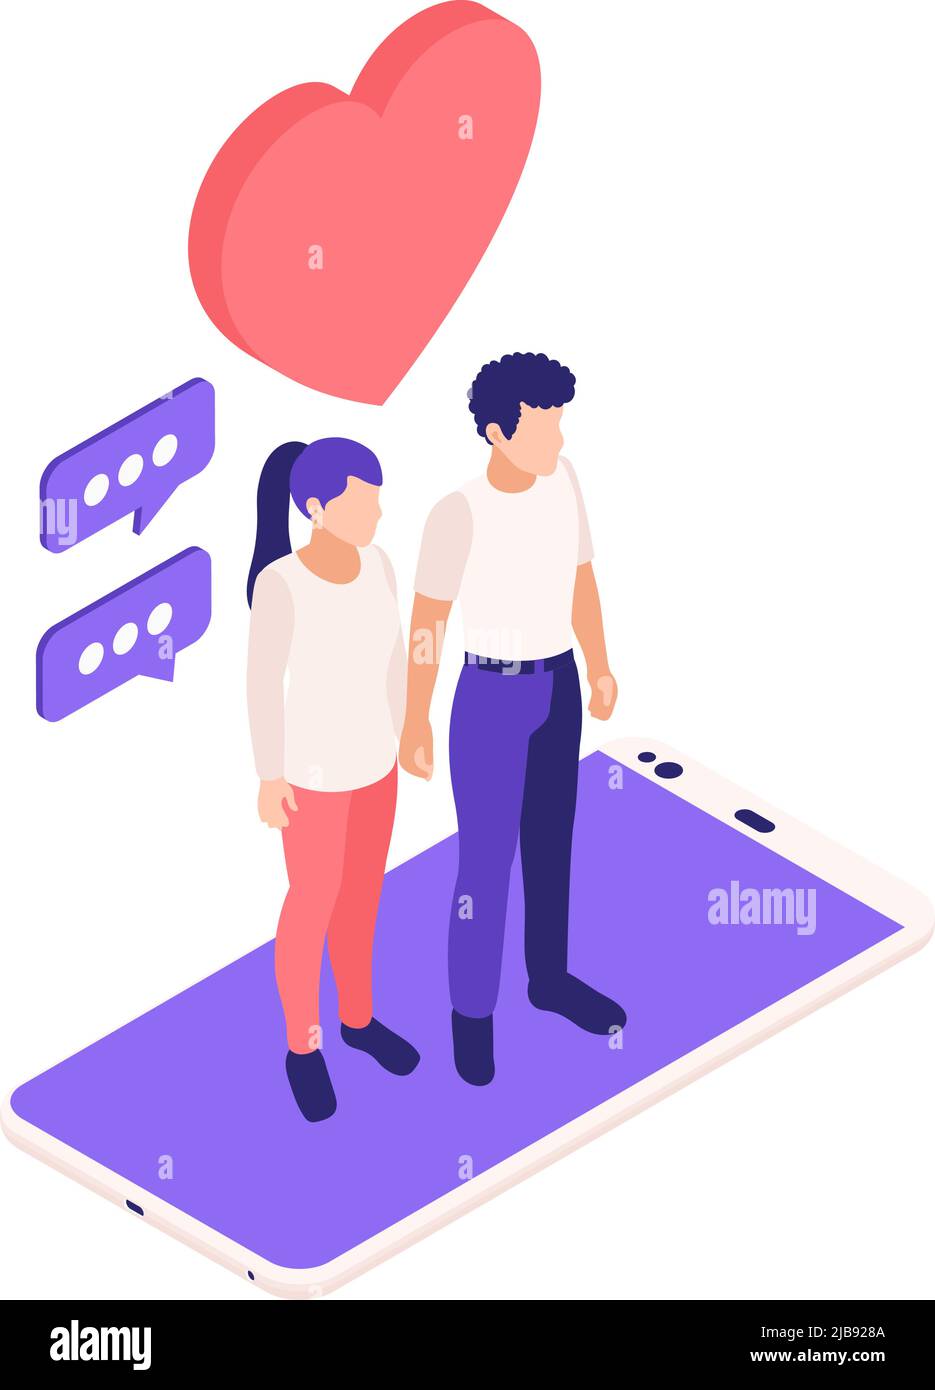 Virtuelle Beziehungen online Dating isometrische Zusammensetzung mit jungen Paar auf der Oberseite des Smartphone-Vektor-Illustration stehen Stock Vektor